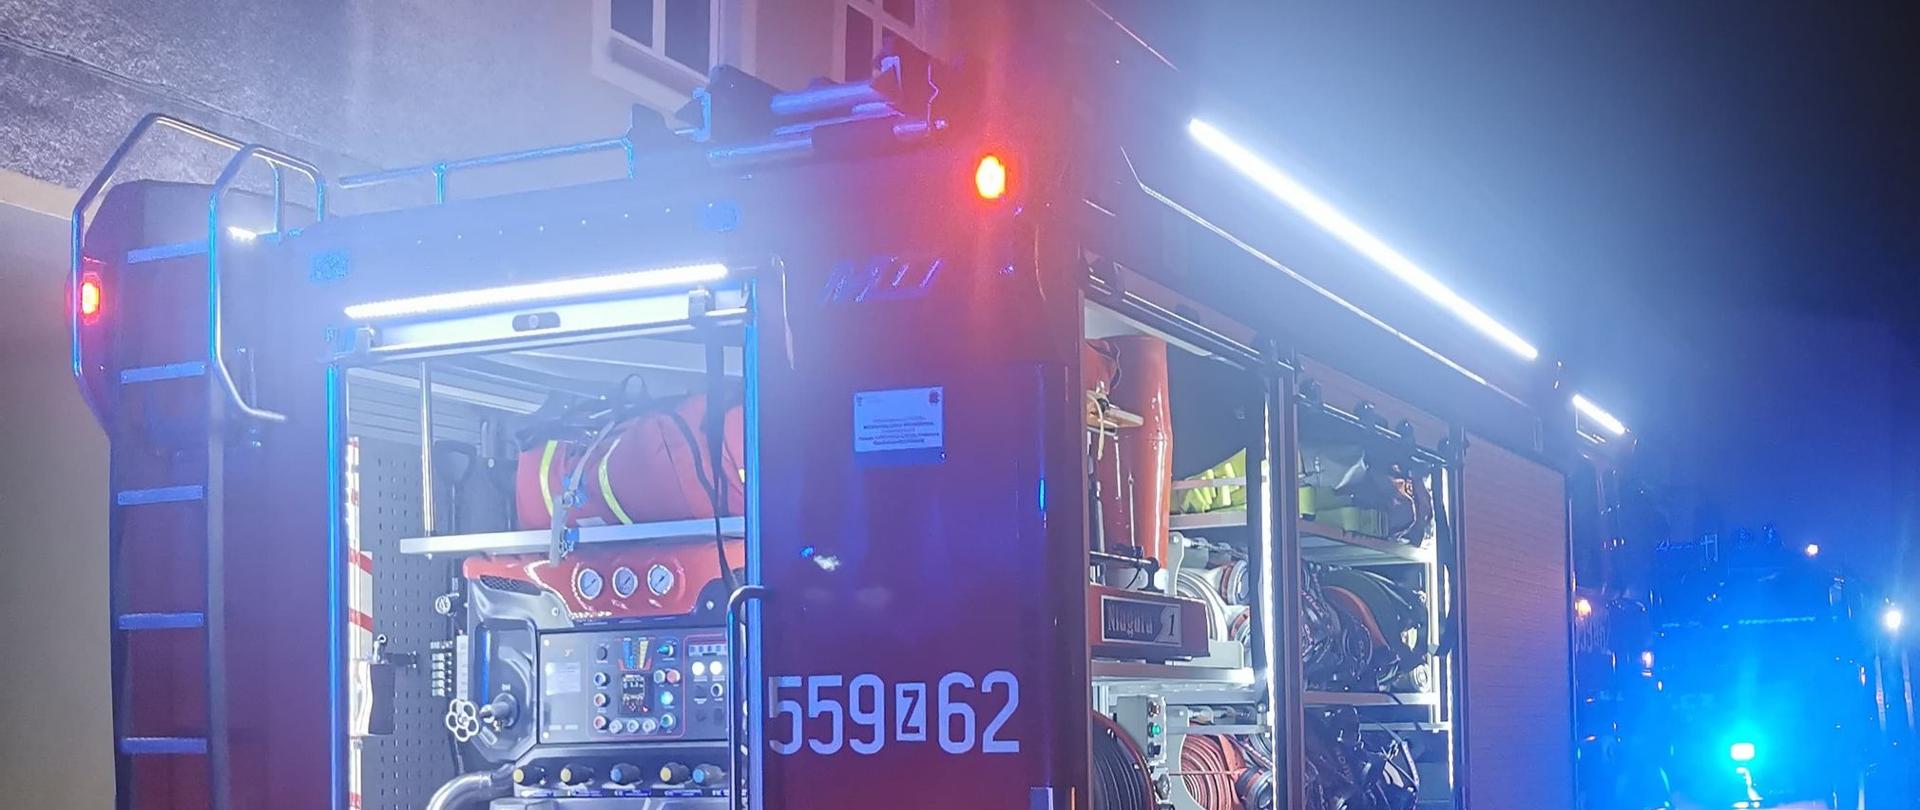 Zdjęcie przedstawia tył średniego samochodu ratowniczo-gaśniczy straży pożarnej z otwartymi oświetlonymi skrytkami, włączonymi światłami pozycyjnymi oraz niebieskimi błyskowymi. W tylnej skrytce widać autopompę samochodu strażackiego, który podaję wodę do pożaru. Z lewej strony widać czerwony wąż podłączony do nasady tłocznej pojazdu. Z prawej strony uchwycono część samochodu osobowego, zaś z tyłu widać kolejny wóz strażacki.